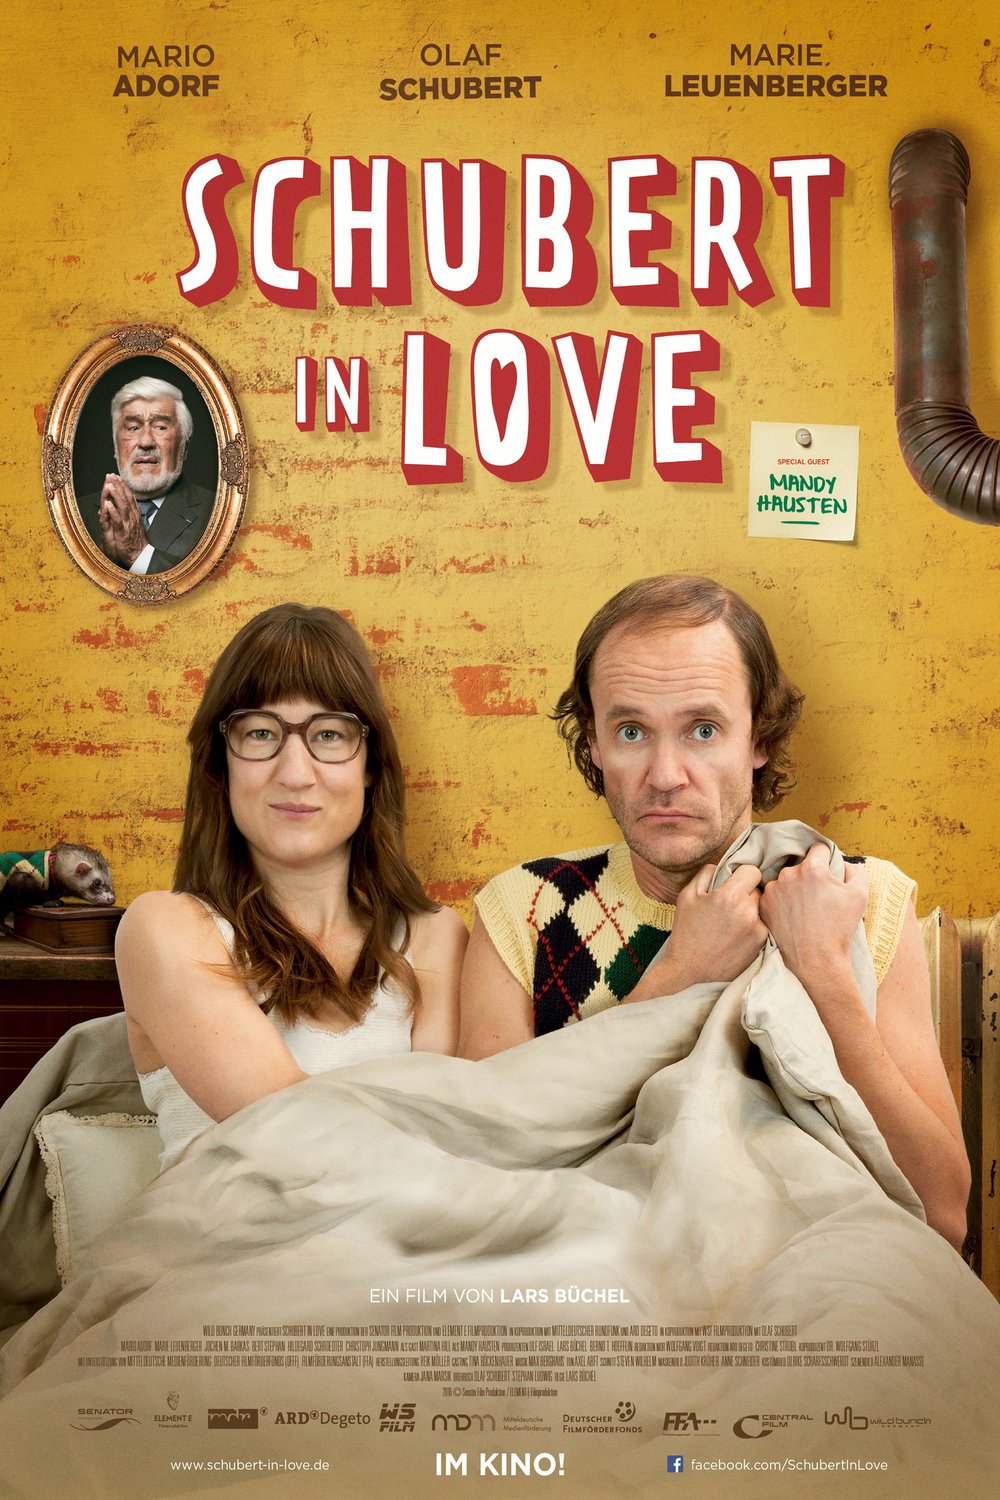 L'affiche originale du film Schubert in Love: Vater werden ist nicht schwer en allemand